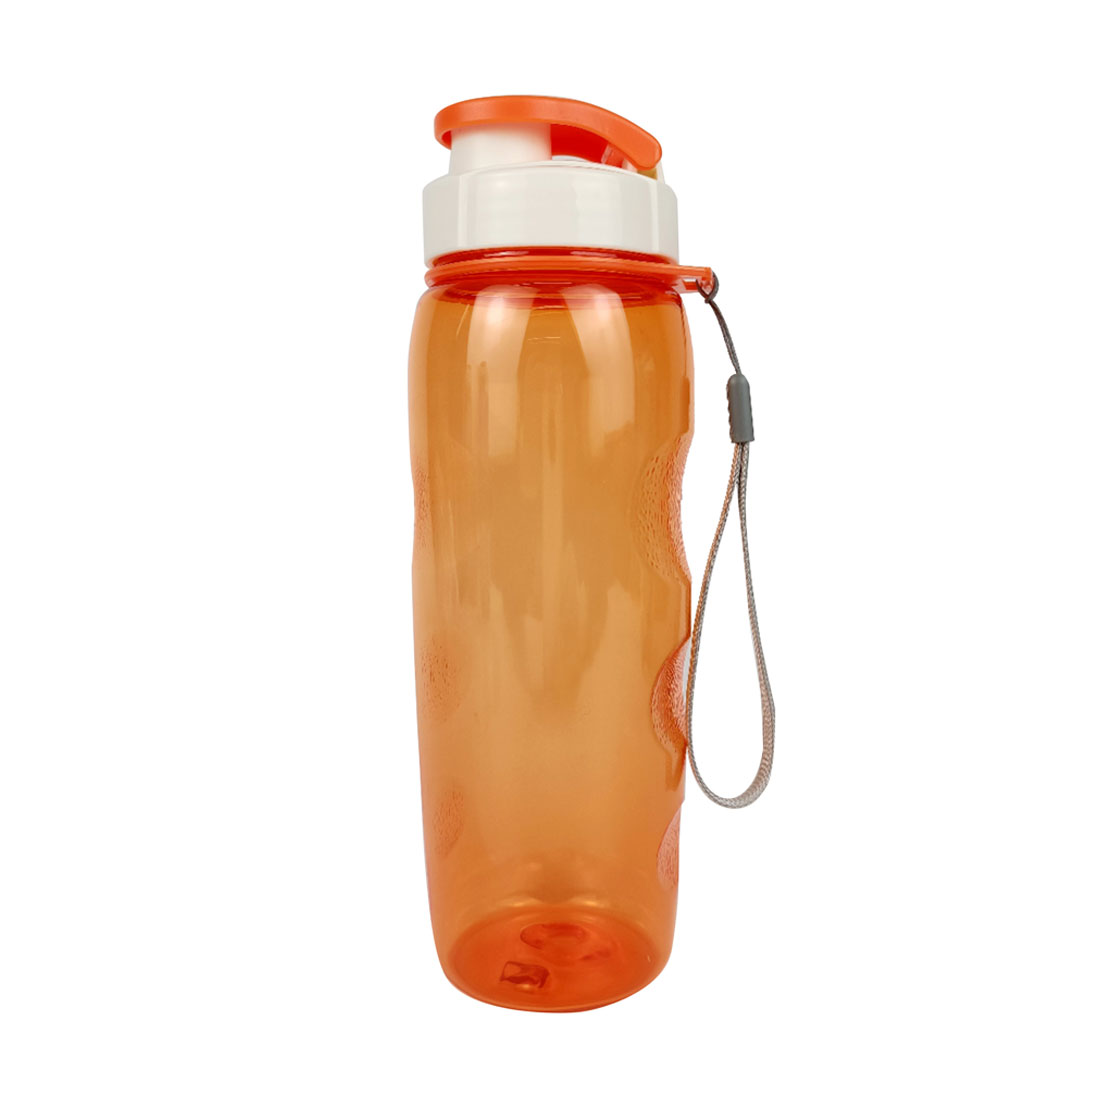 Пластиковая бутылка Сингапур (с клапаном) - Оранжевый OO, Оранжевый OO